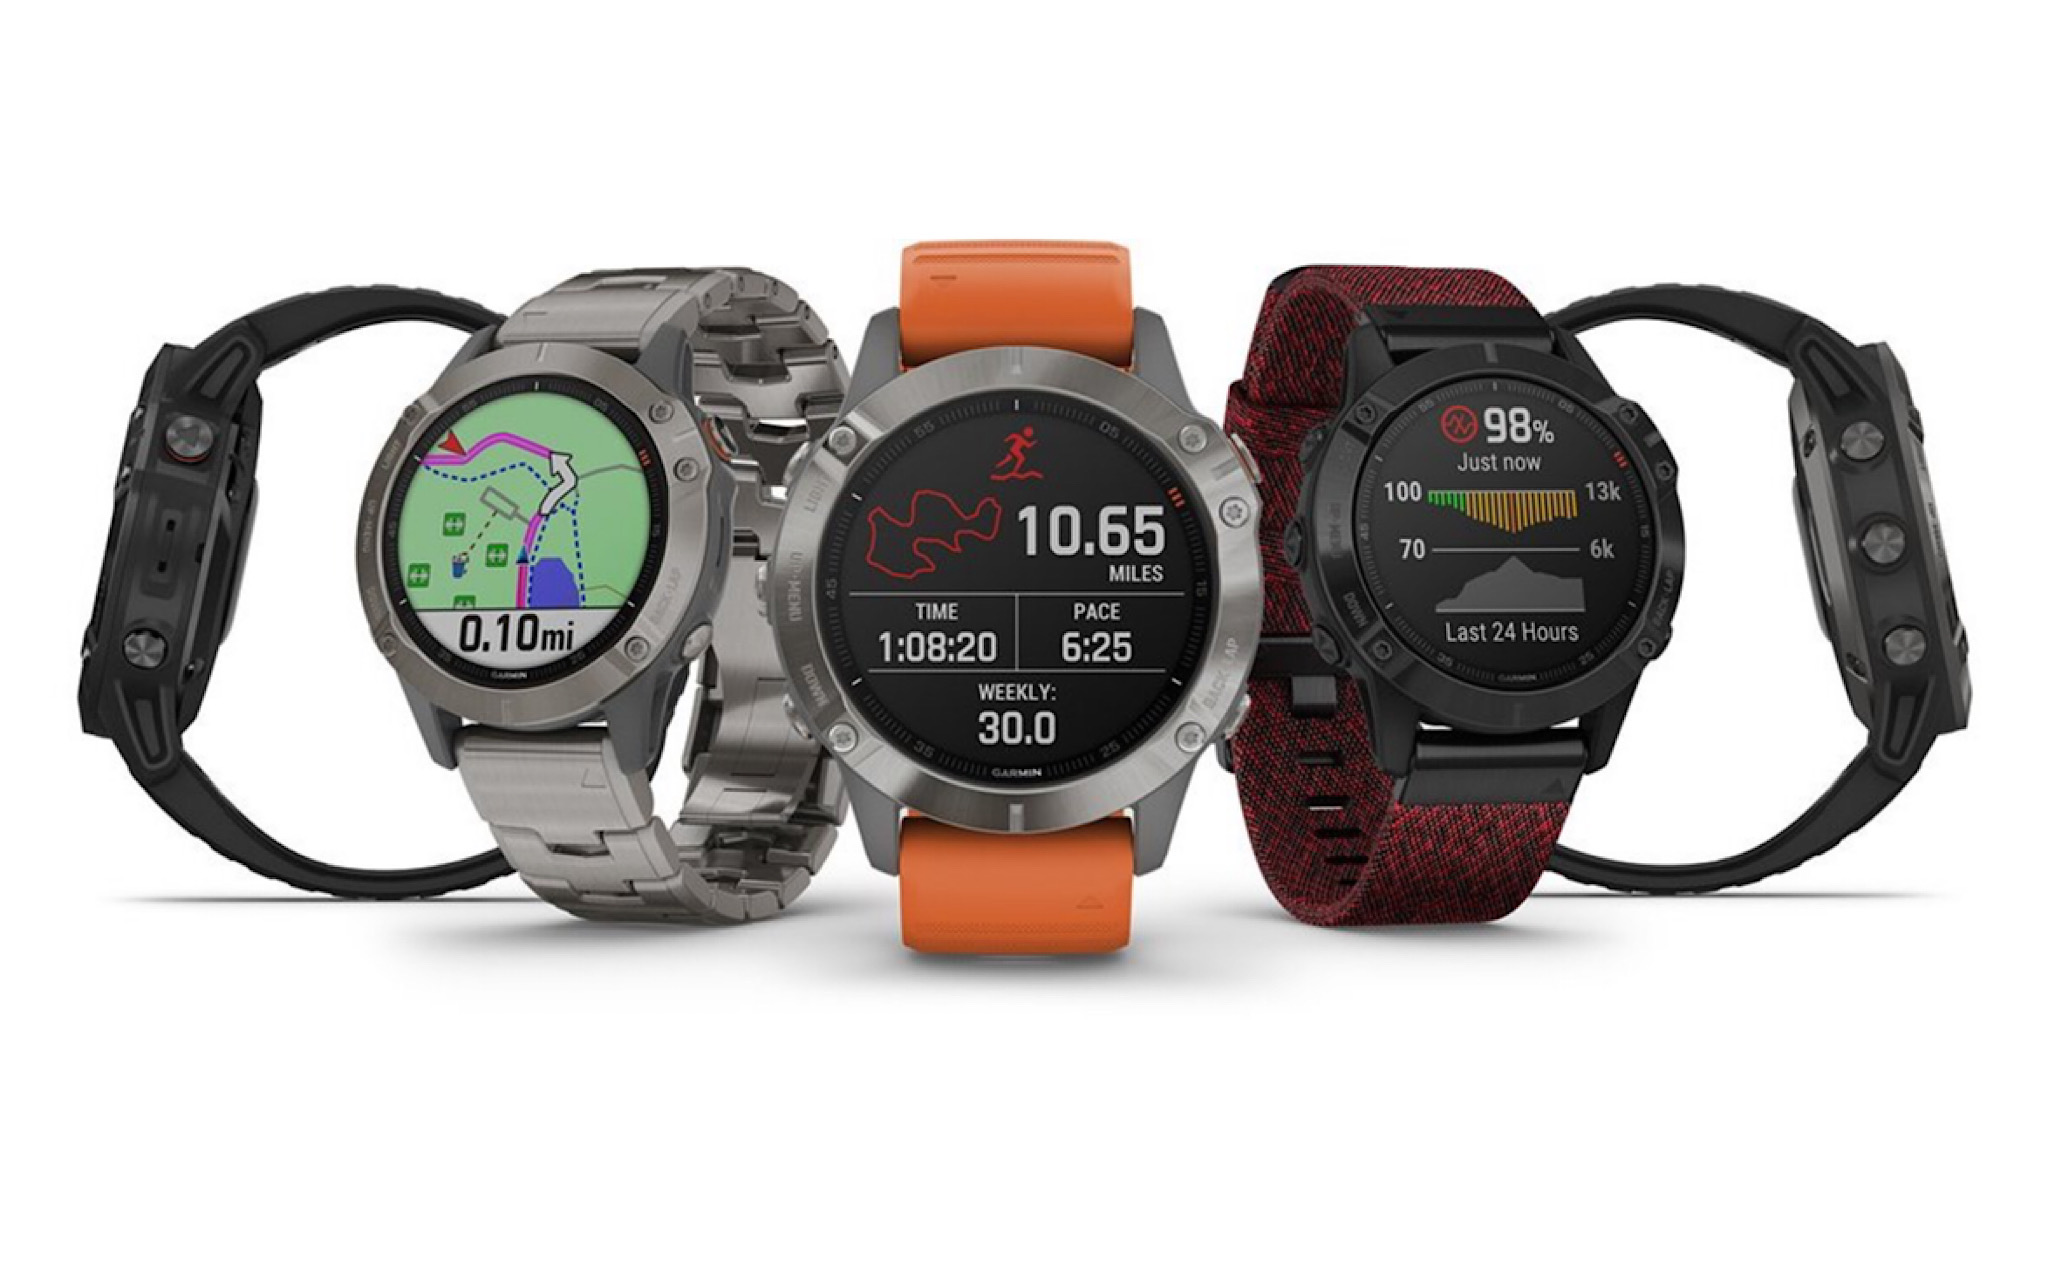 Những thế mạnh giúp Garmin dẫn đầu thị trường đồng hồ GPS hiện nay